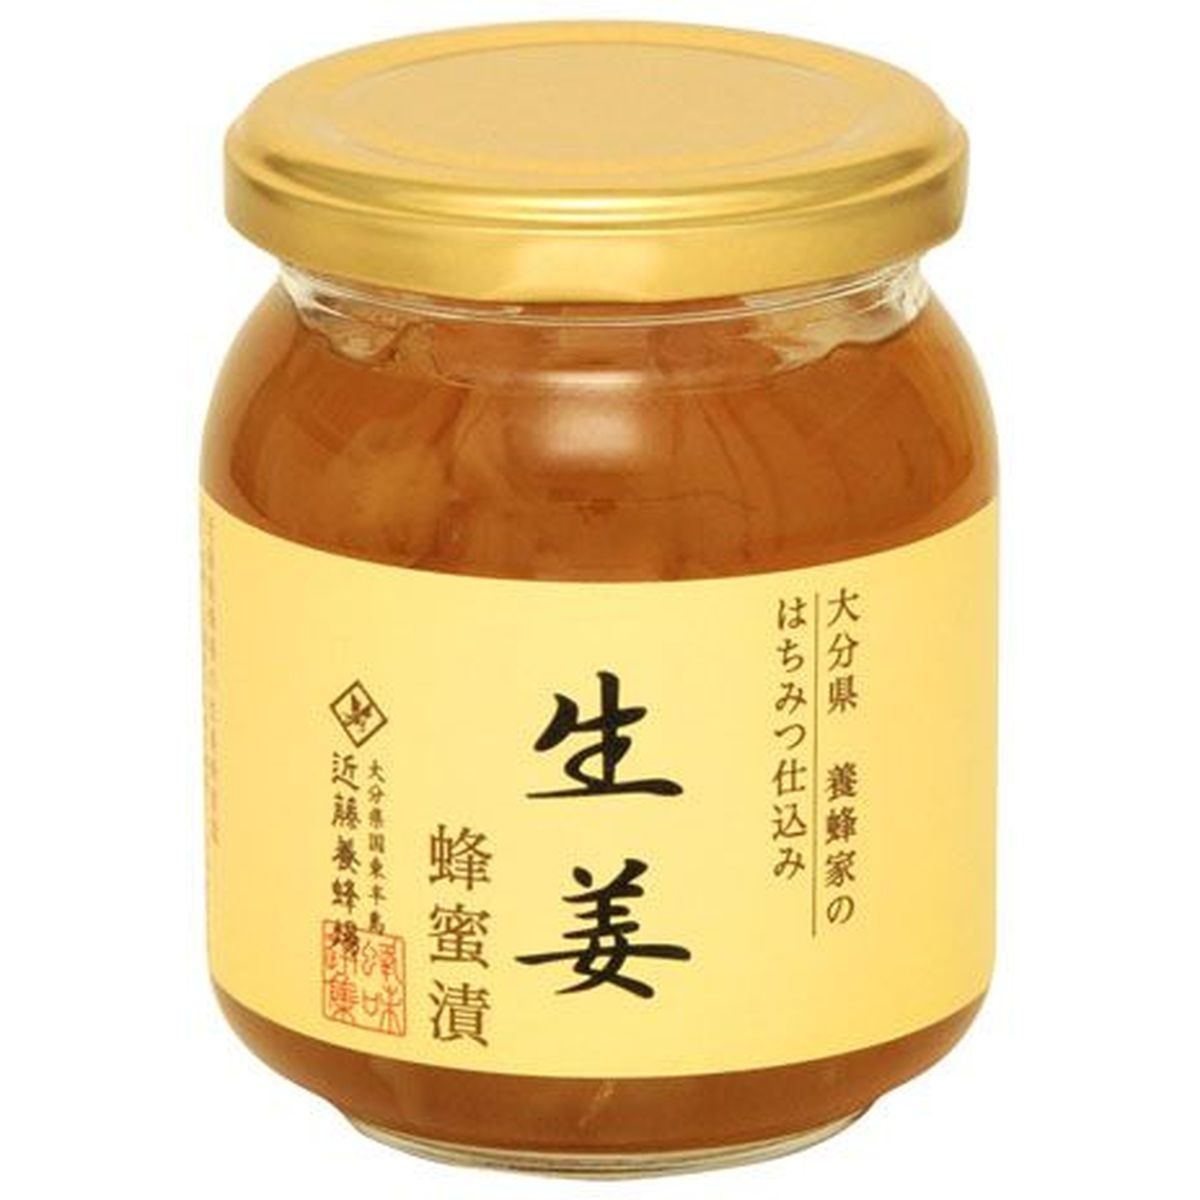 【12個入リ】近藤養蜂場 生姜蜂蜜漬 280g